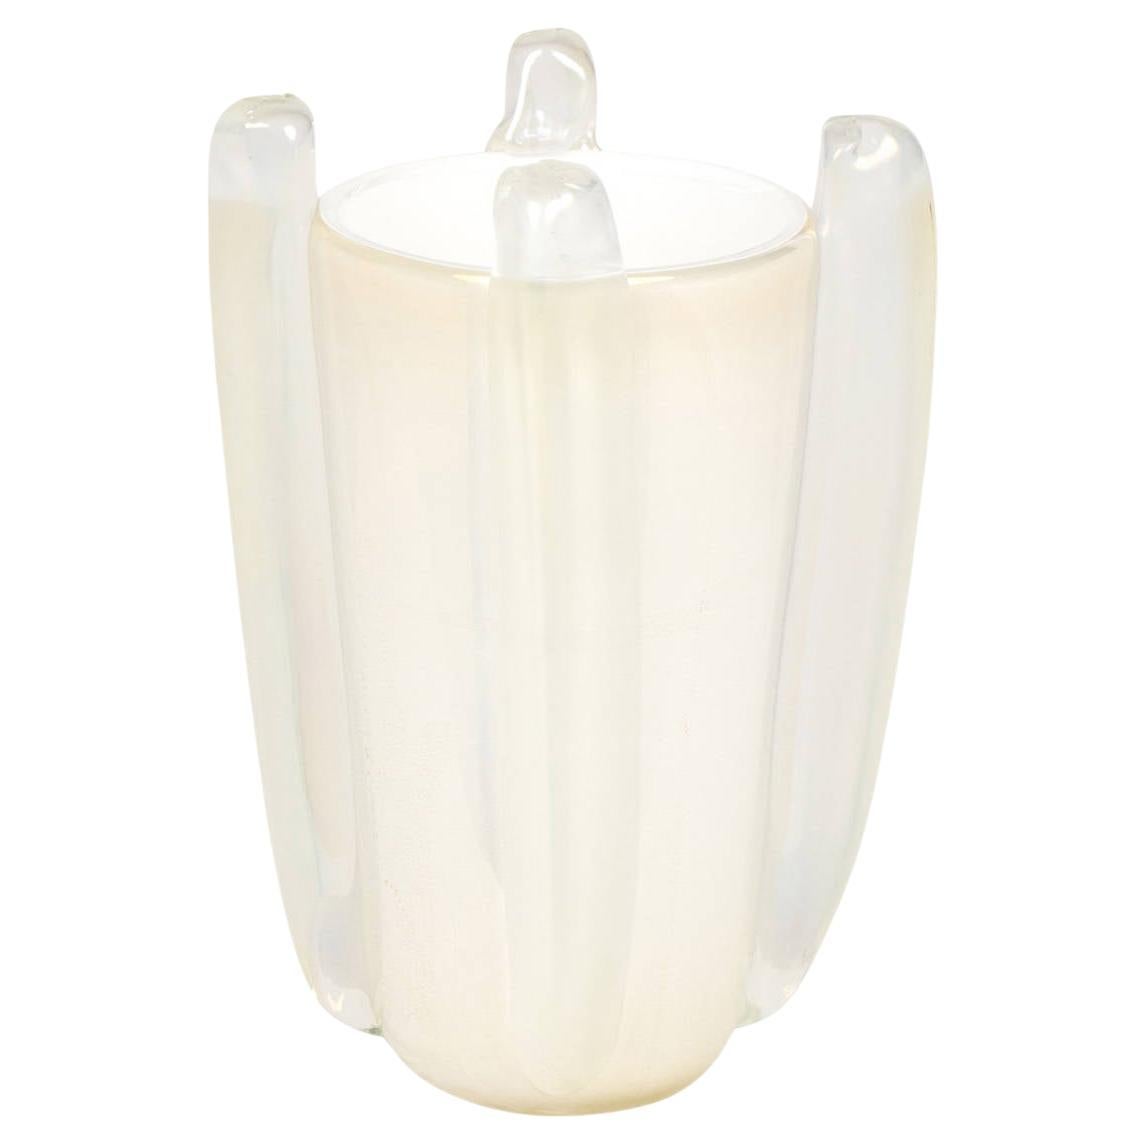 Murano White "Avventurina" Glass Vase